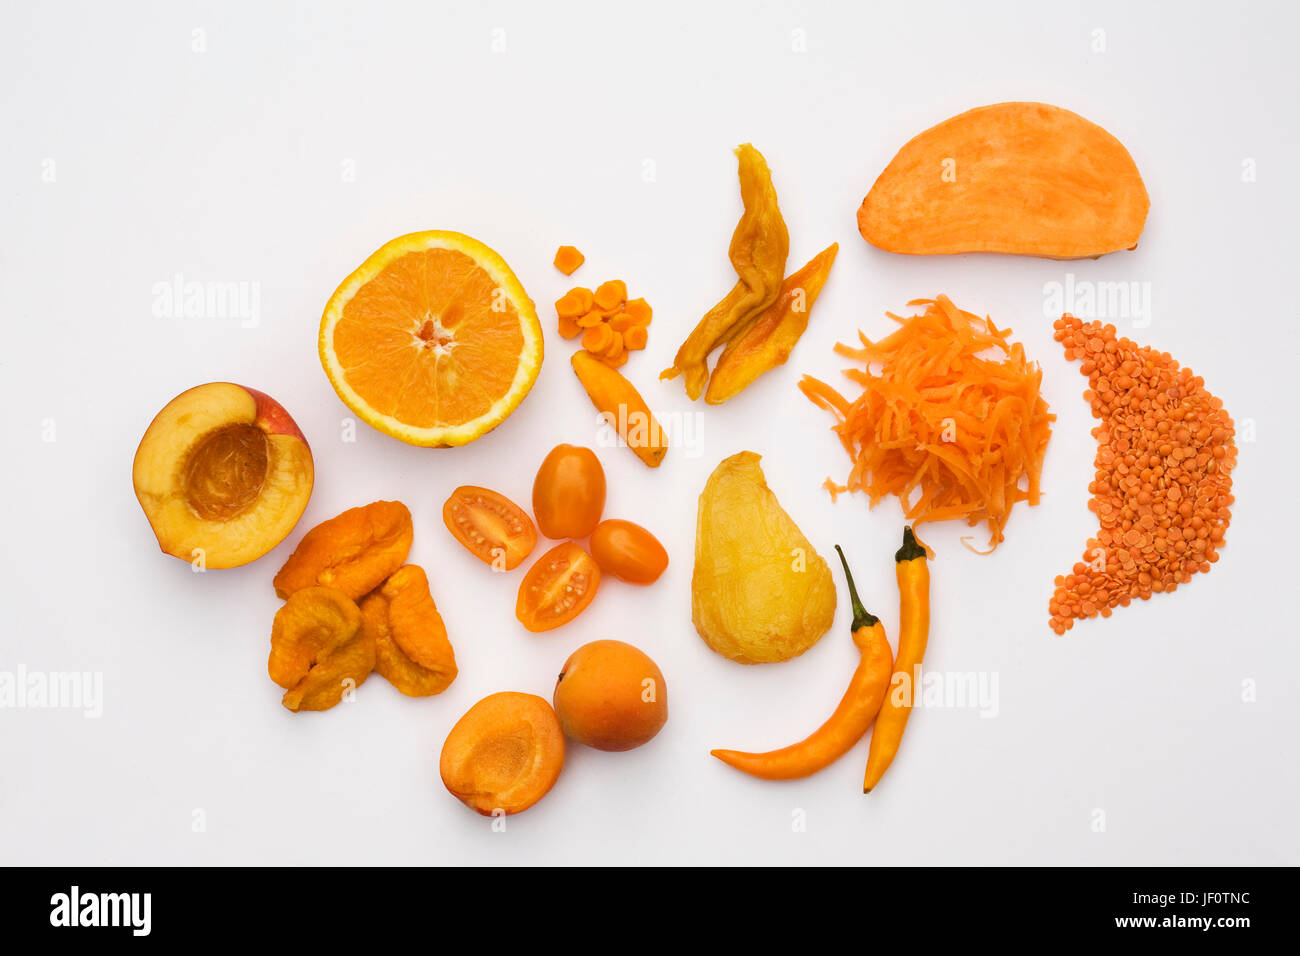 Shades of Orange on a white background. Stock Photo